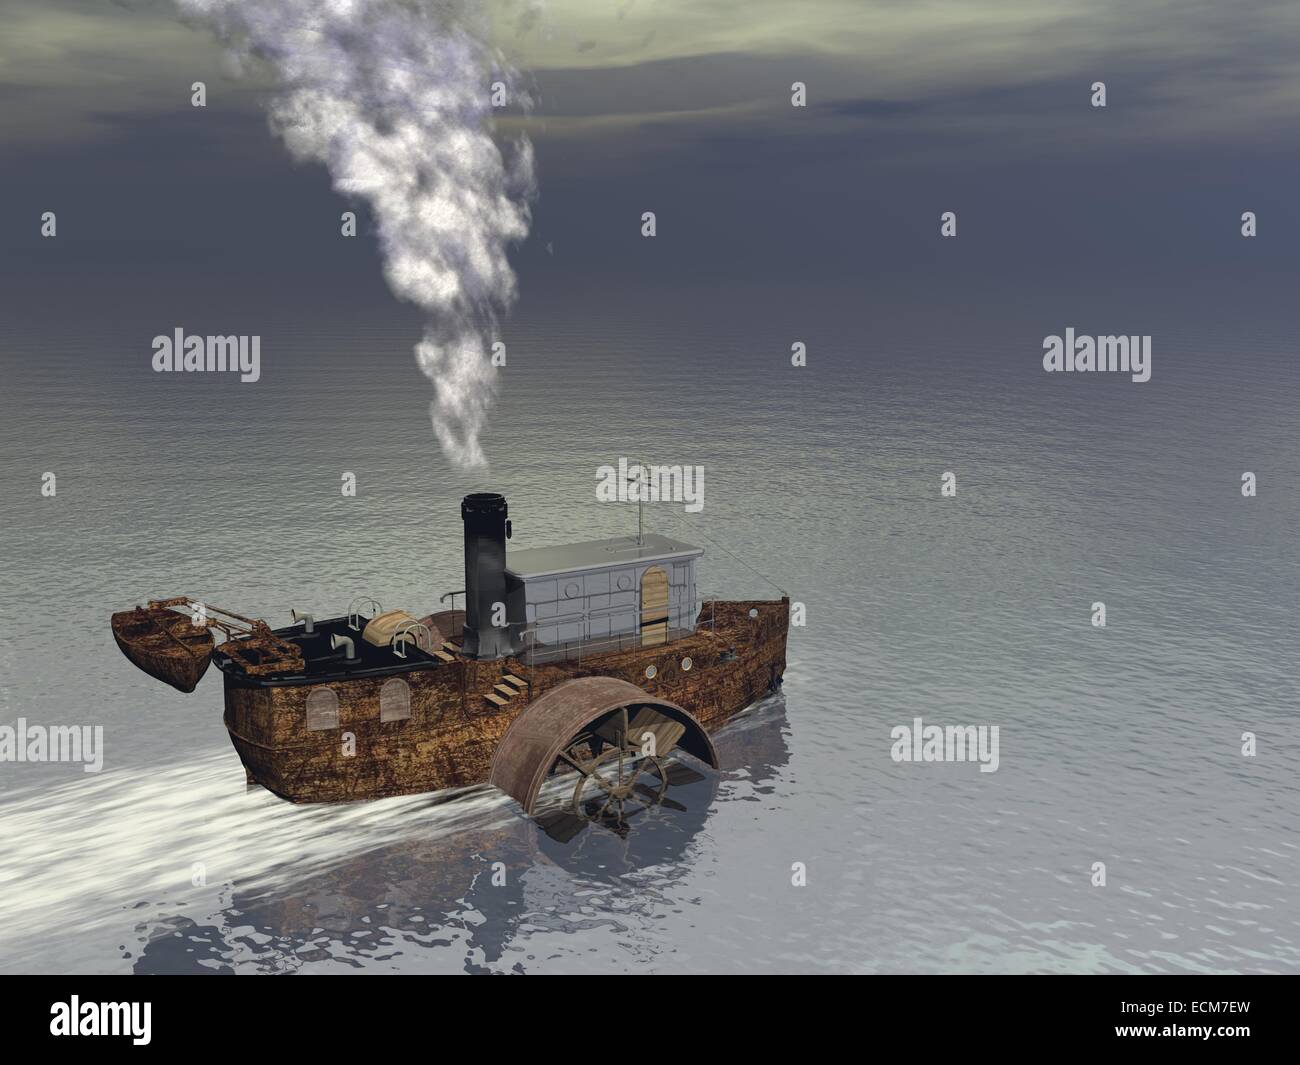 Petit bateau à vapeur bateau flottant sur l'eau et la production de fumée secondaire Banque D'Images